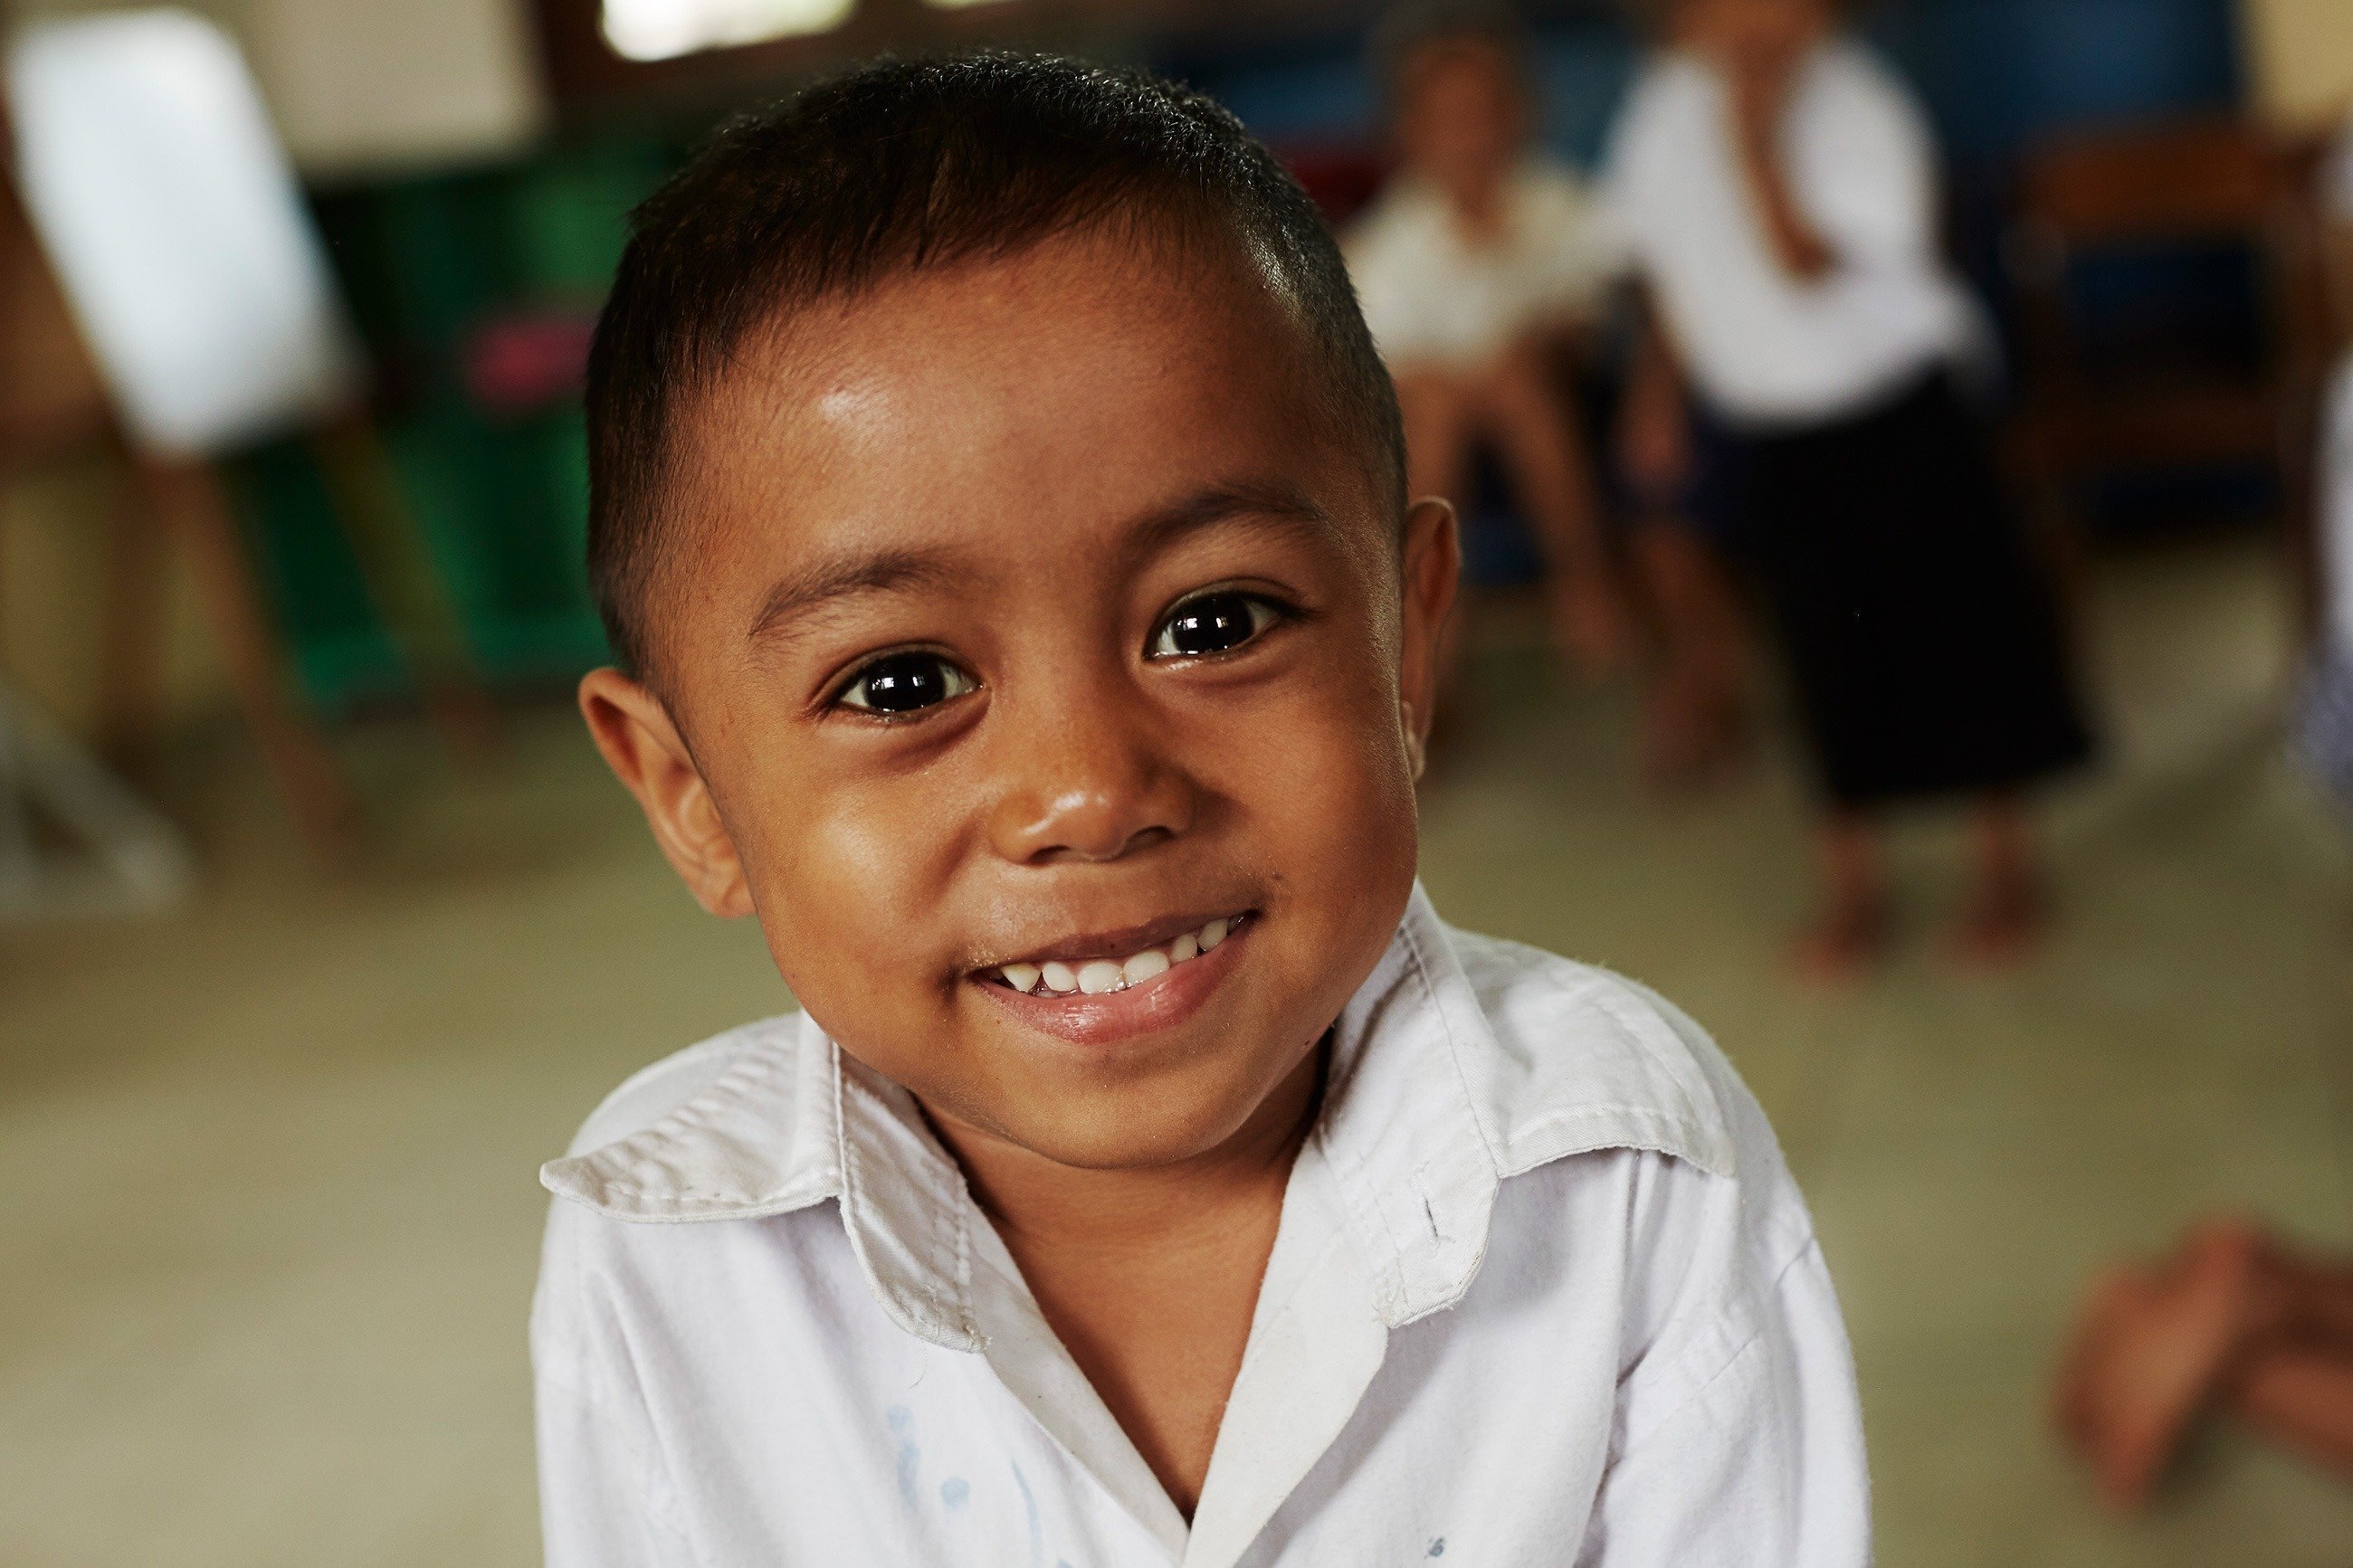 Devenez marraine pou parrain d'un village au Nicaragua pour permettre aux enfants en détresse de grandir en bonne santé.